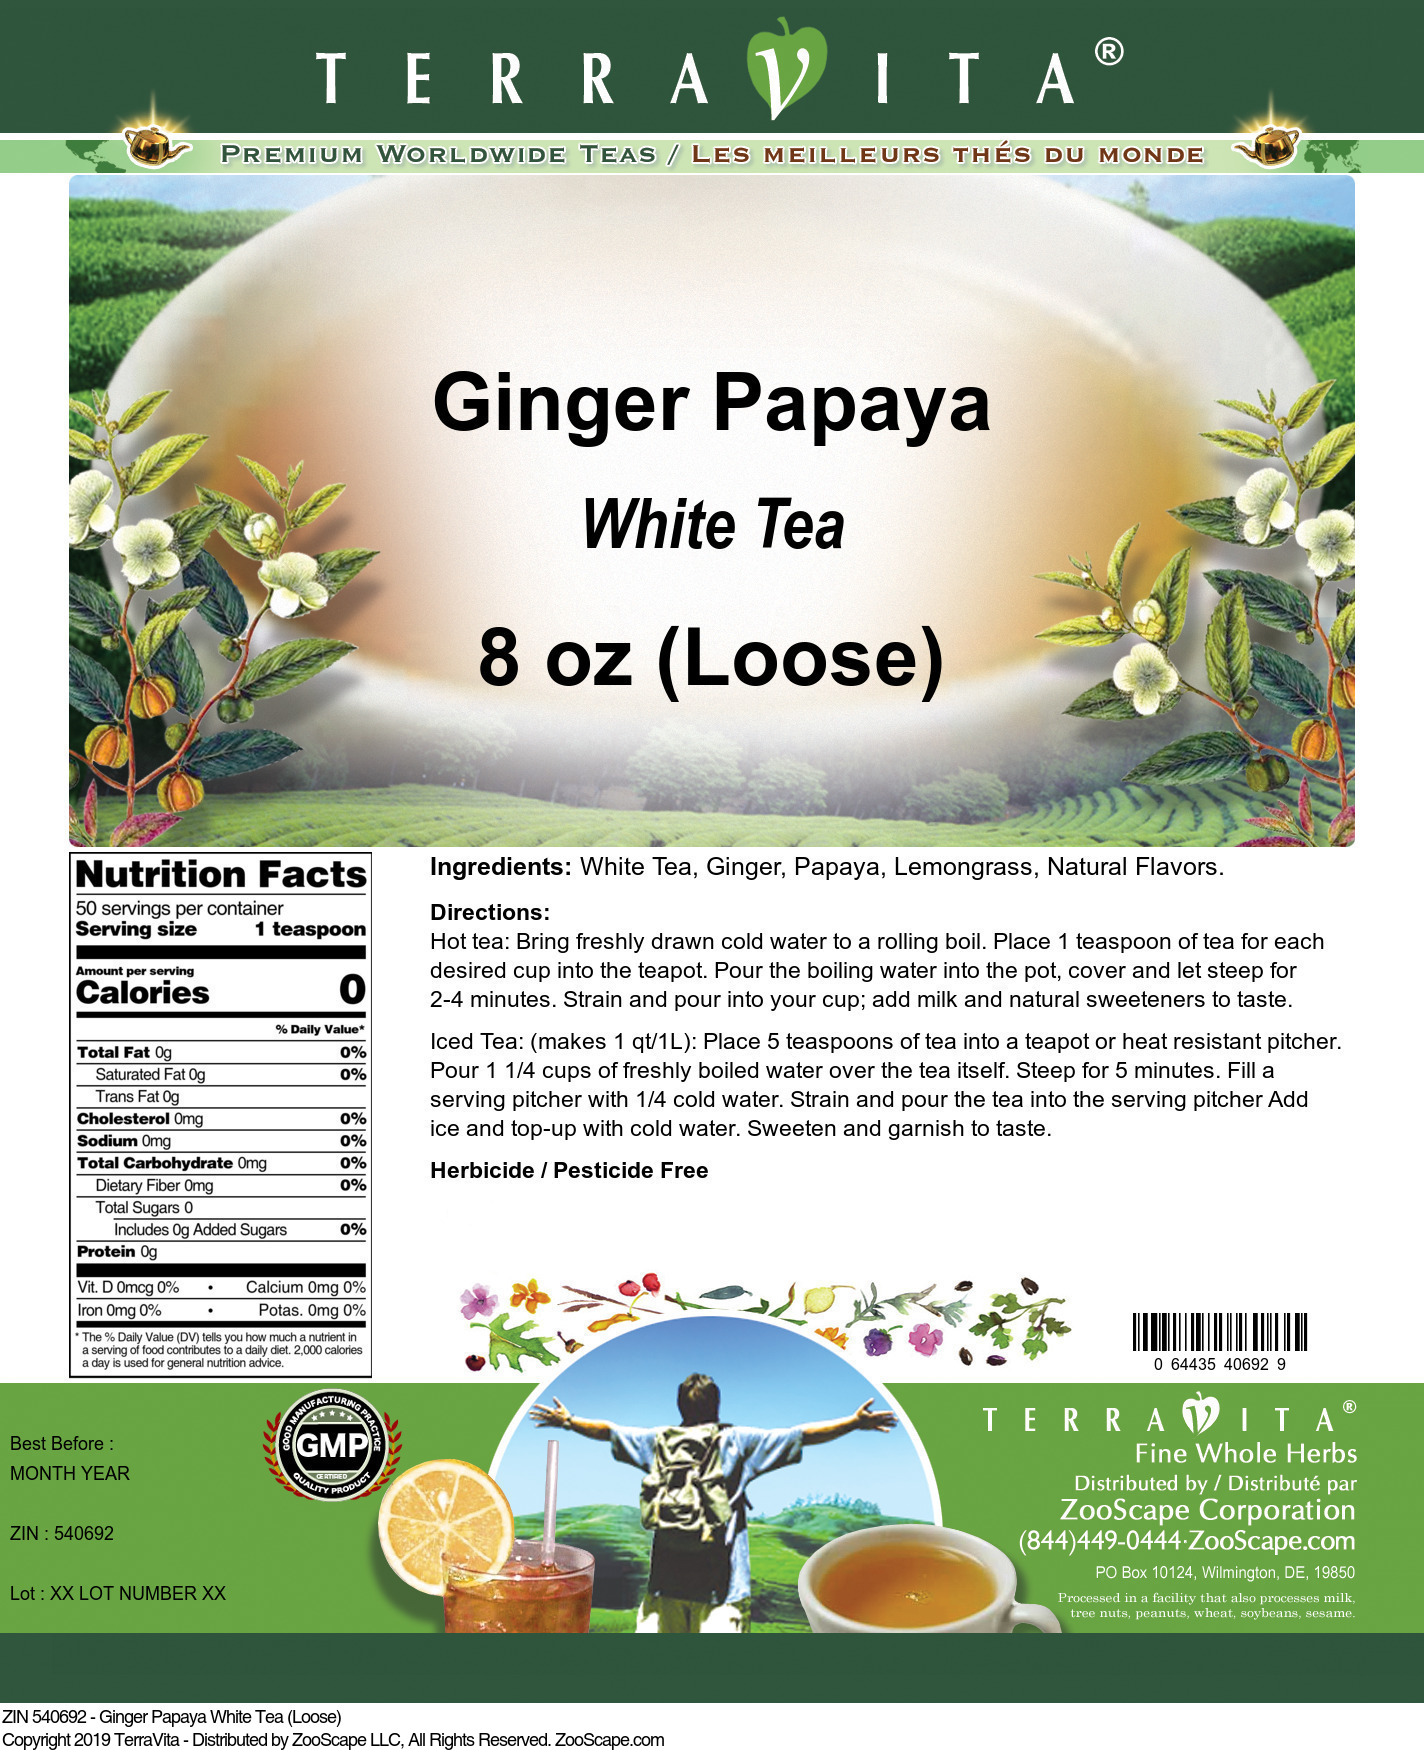 Ginger Papaya White Tea (Loose) - Label